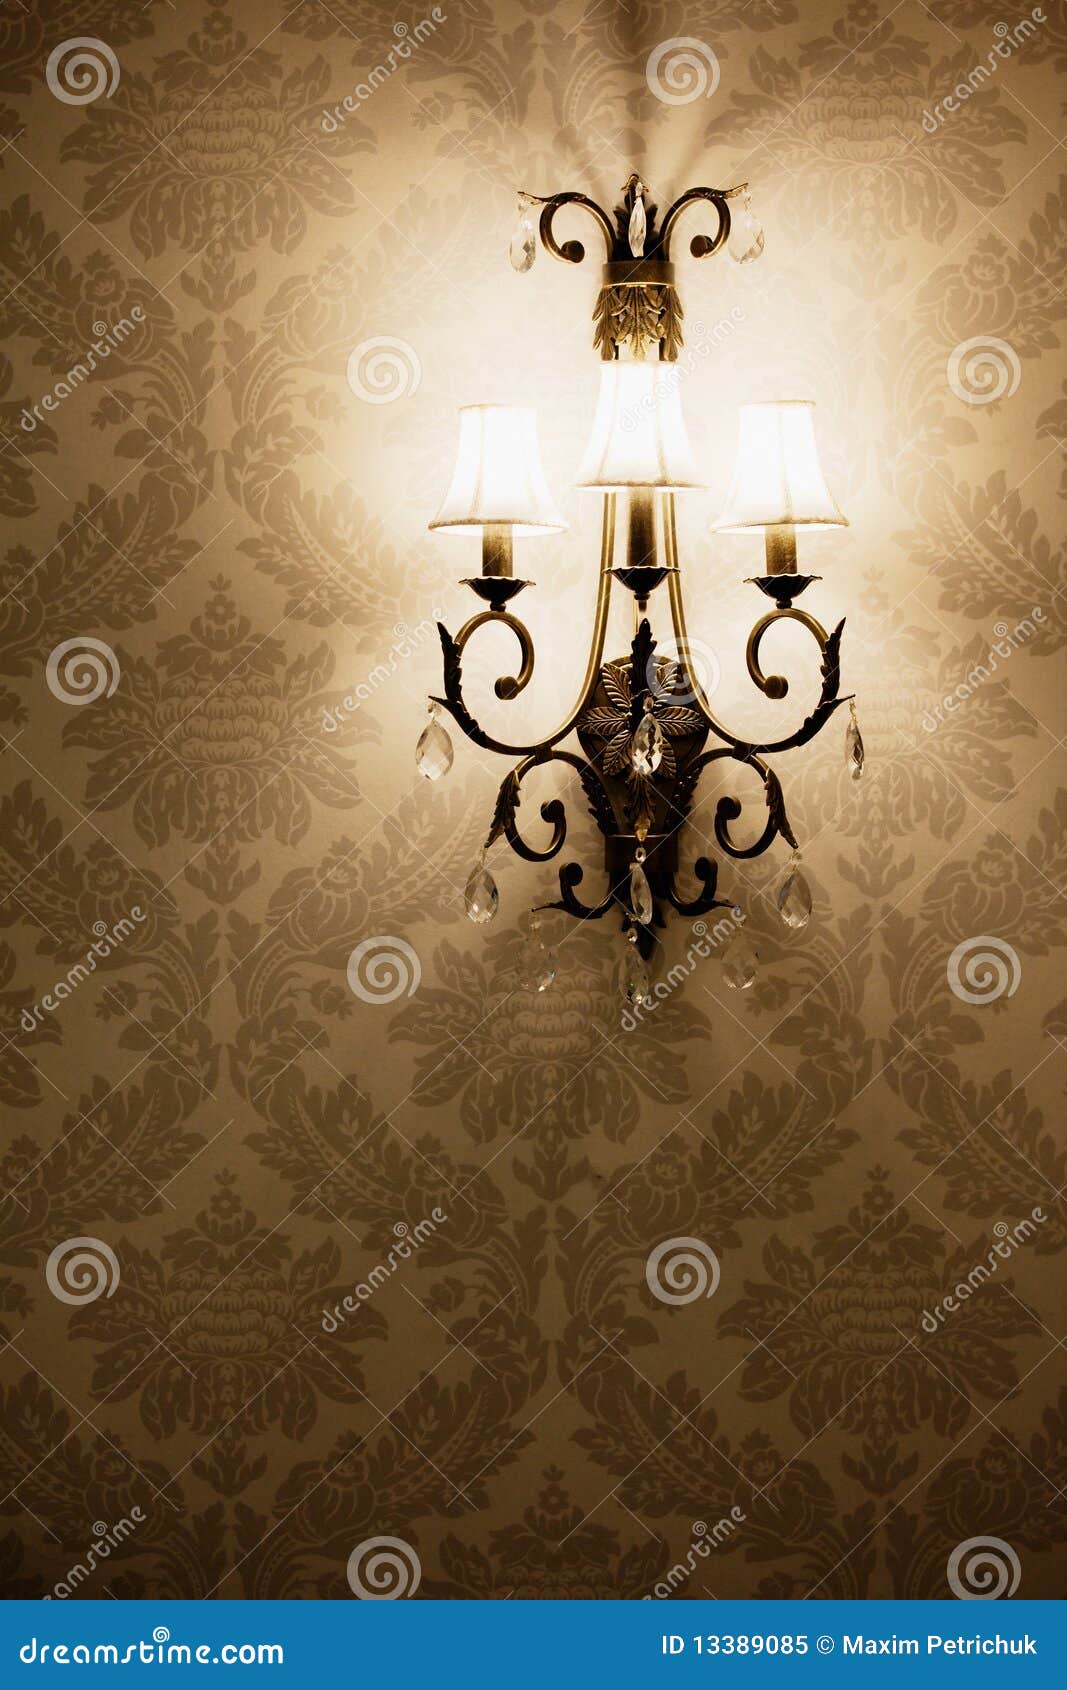 Lamp HD wallpapers  Pxfuel